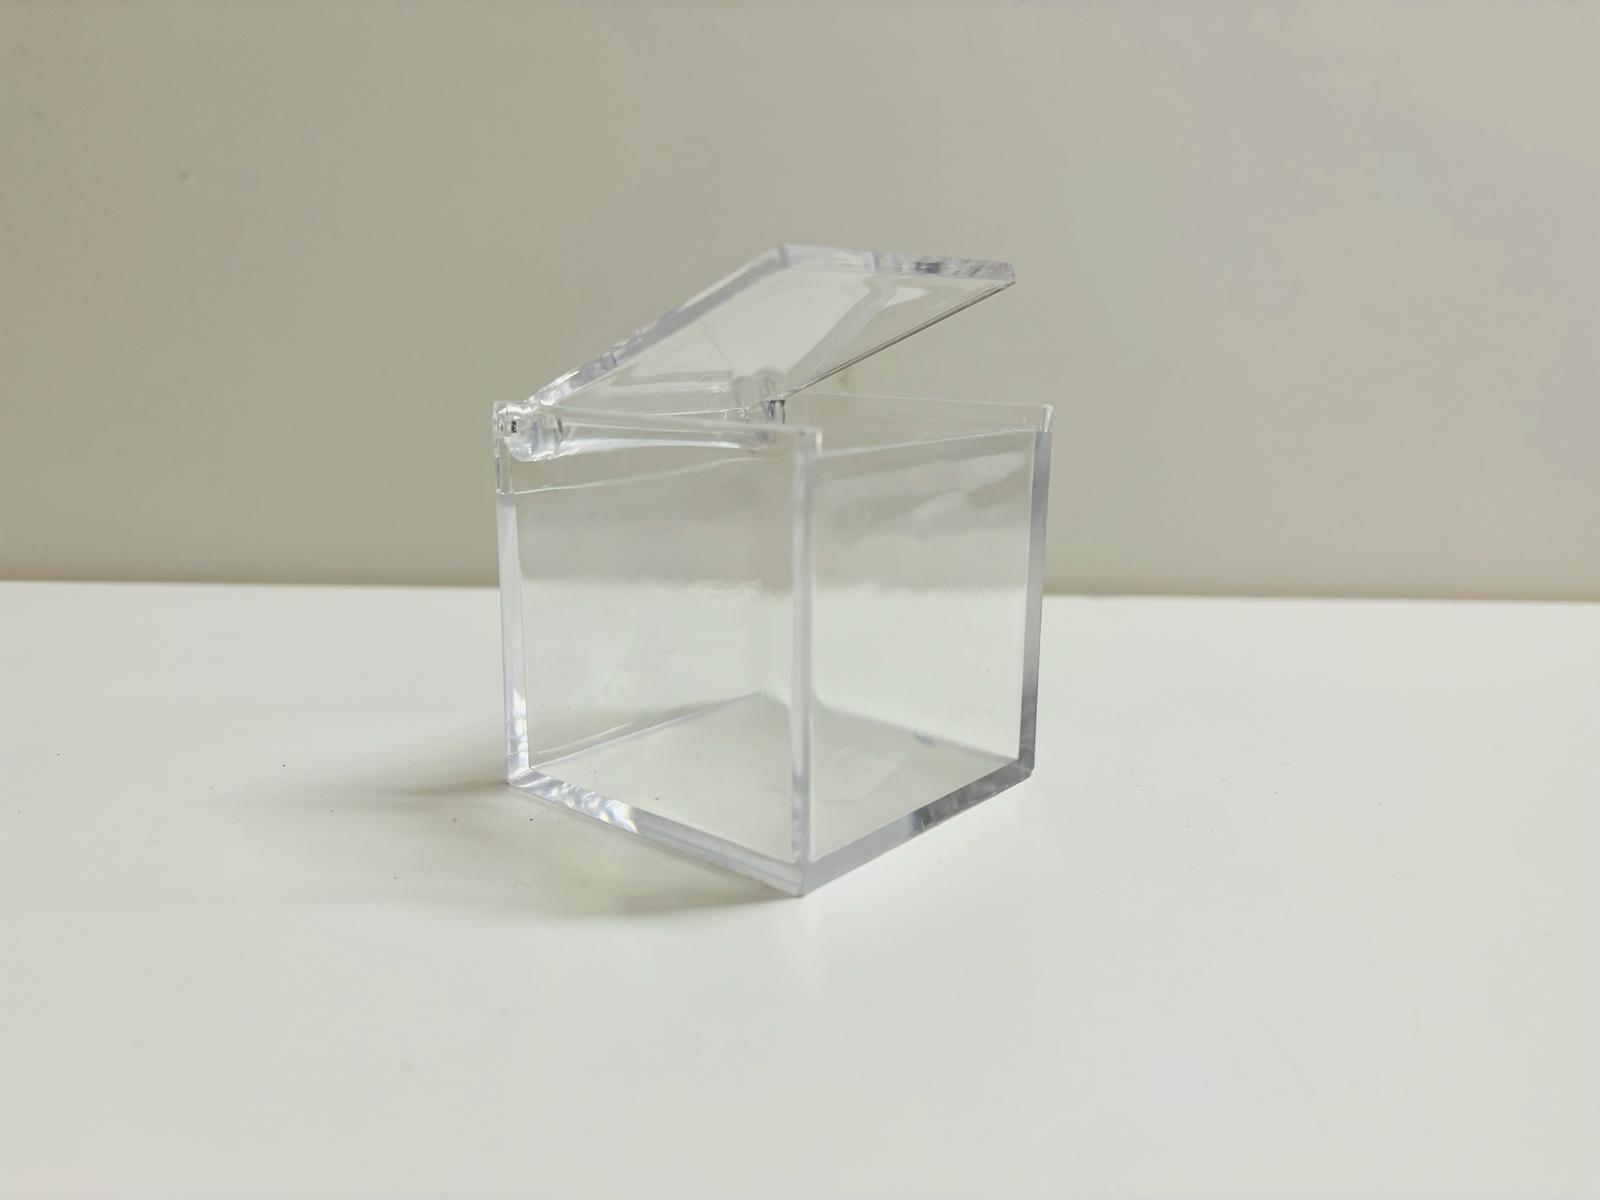 prezzi pazzi - 10 box plexiglass - labottegadelleideelecco.it